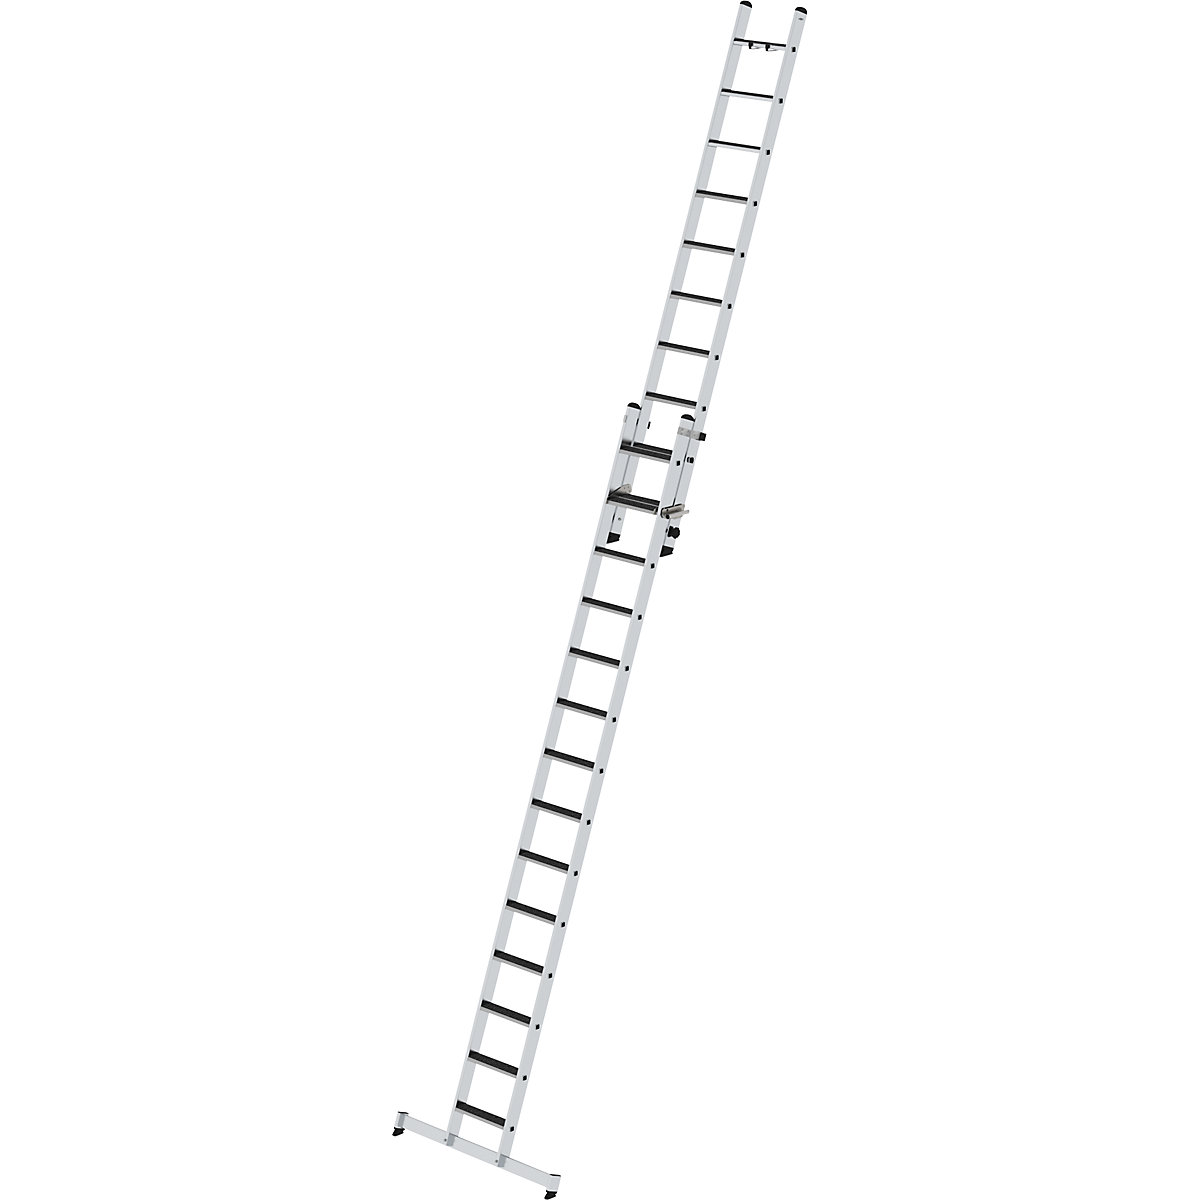 Výsuvný žebřík se stupni, dvoudílný – MUNK, příčník nivello® a nášlapná plocha clip-step, 24 stupňů-3